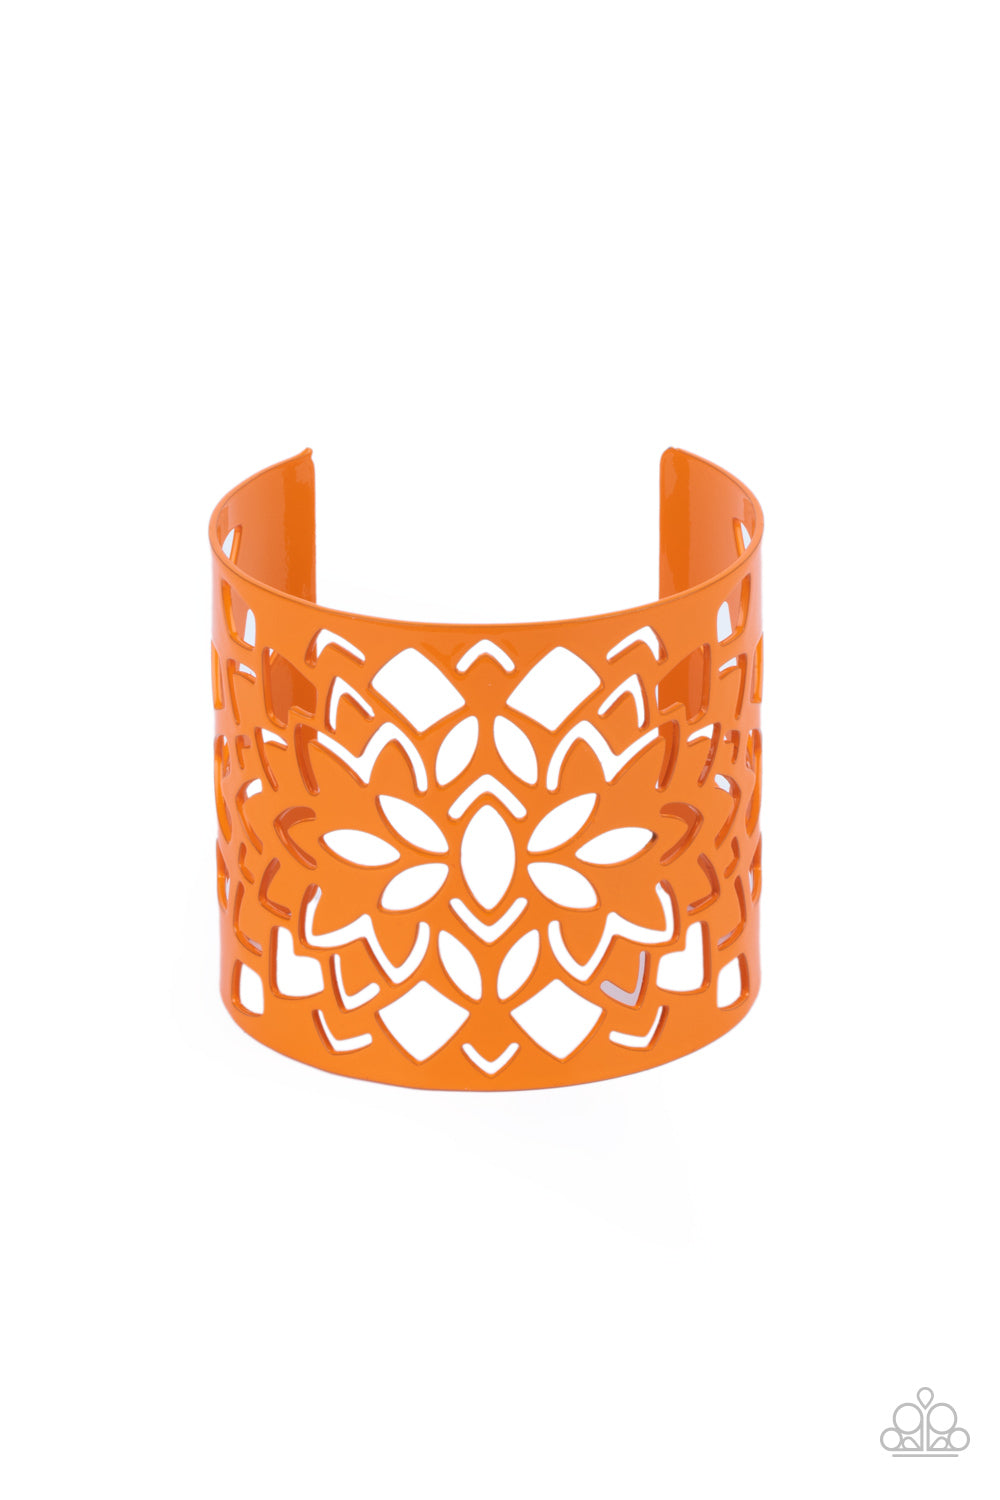 Hacienda Hotspot - paparazzi Orange bracelet (C013)